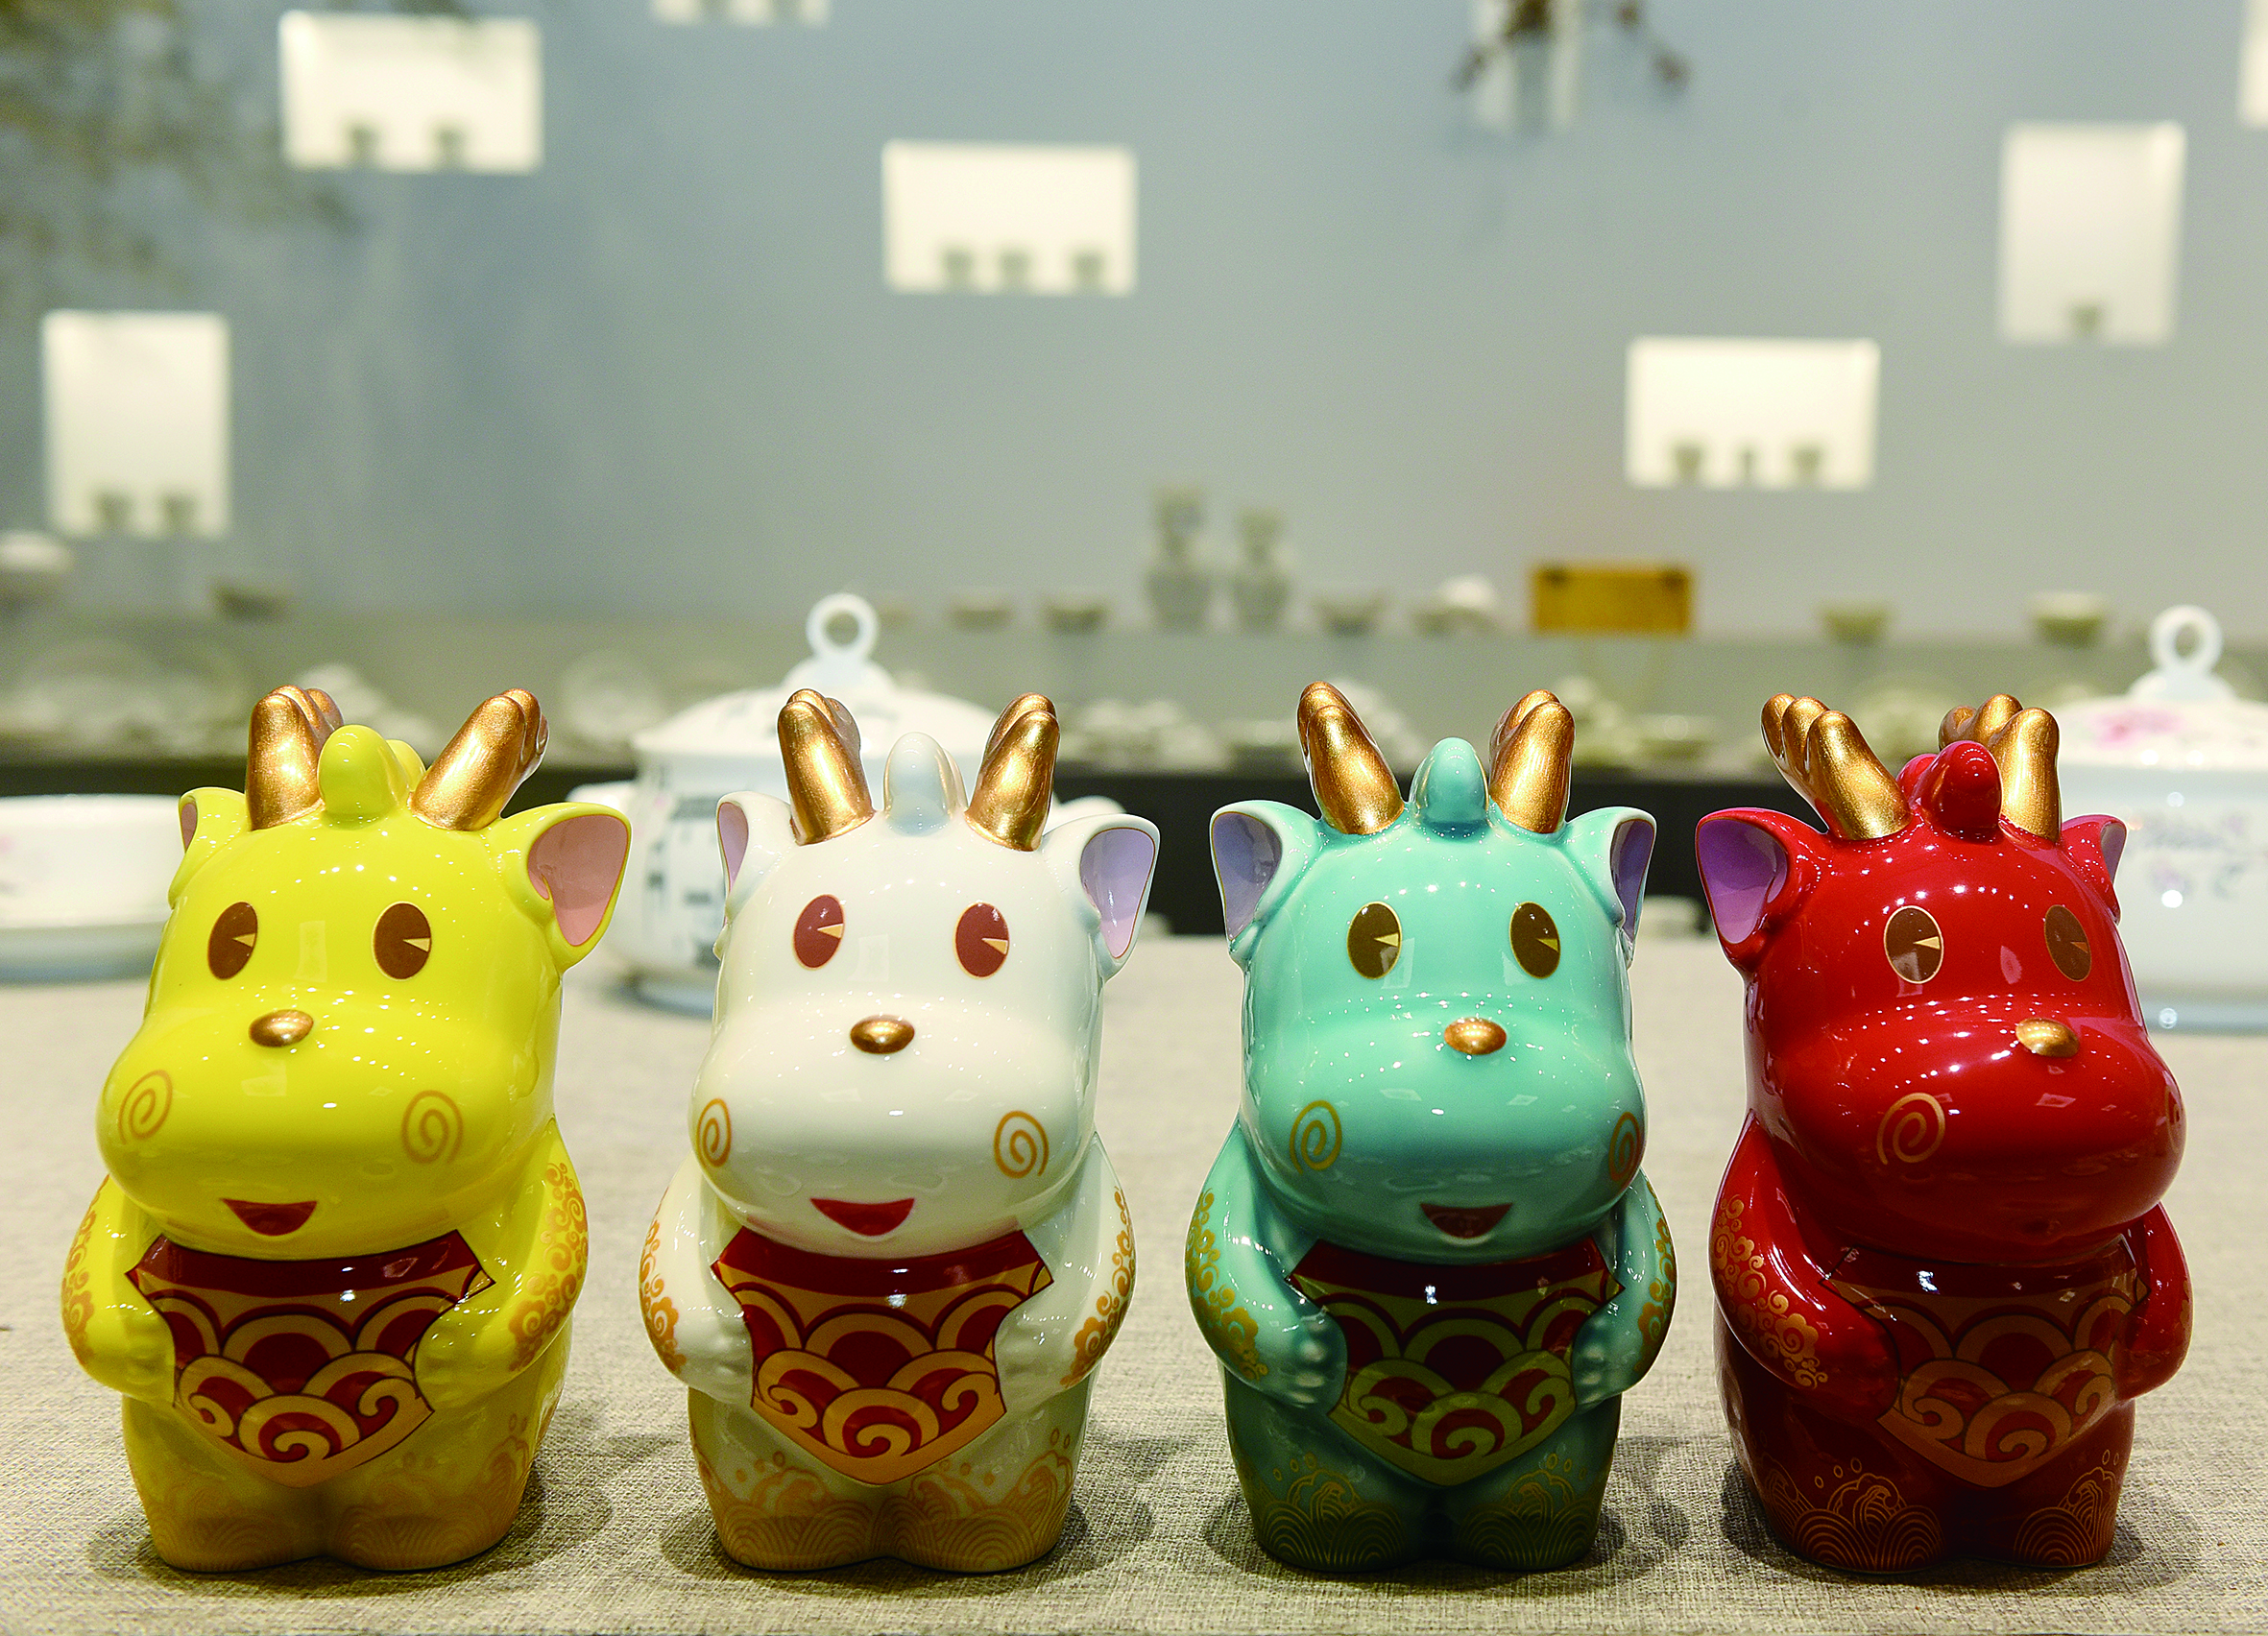 生肖瓷《小神龙》获得第八届“新年礼 中国龙”全国陶瓷创作设计大赛金奖.JPG